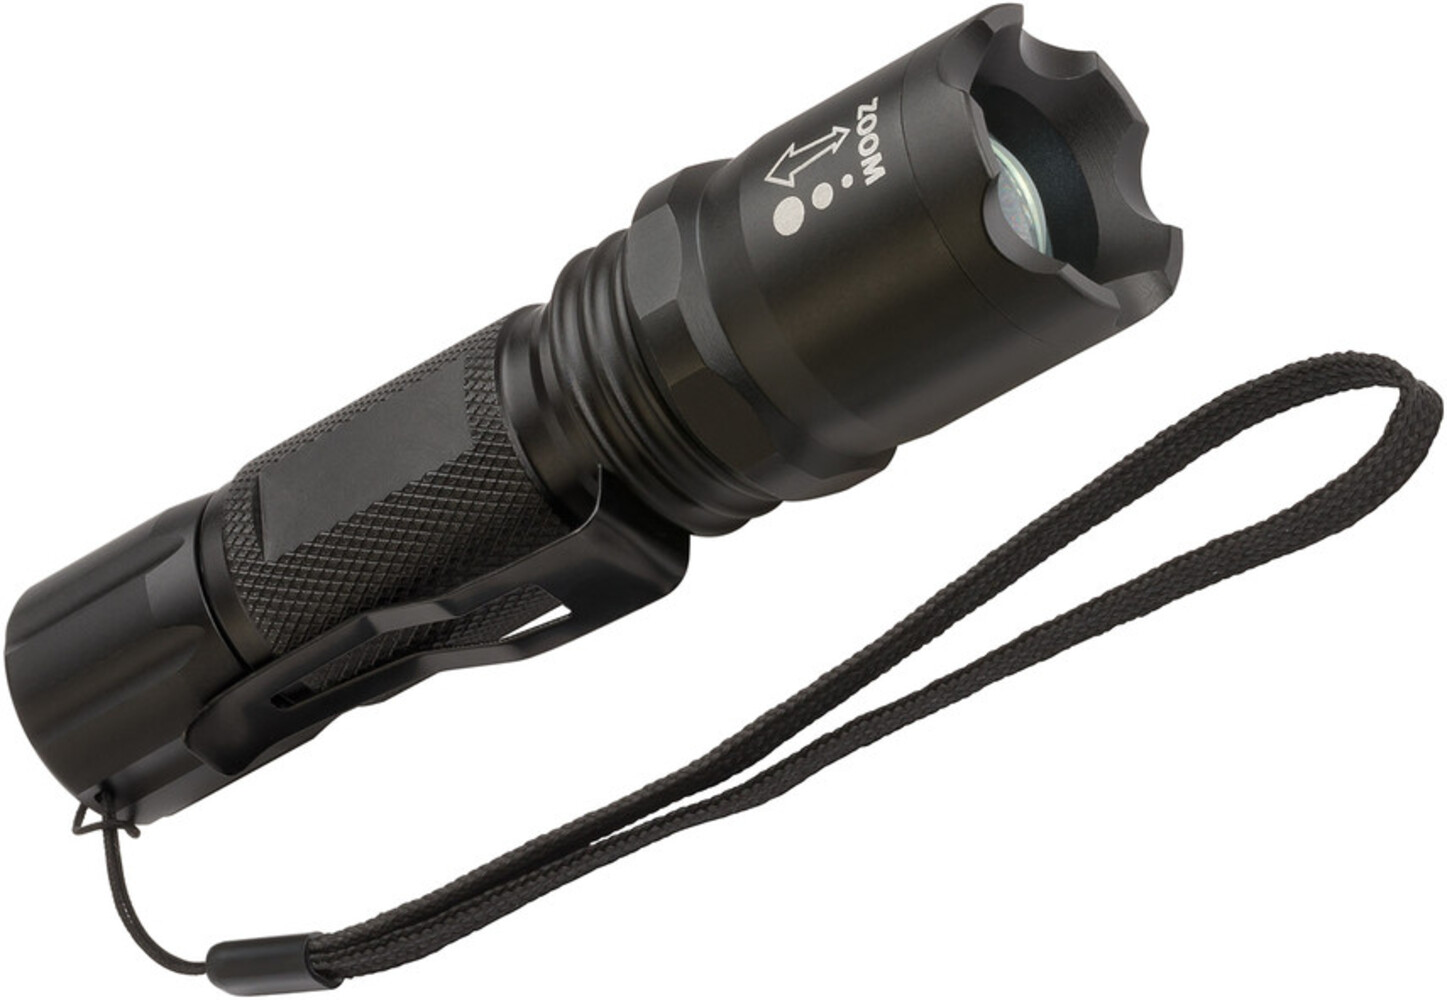 Hochwertige LED Taschenlampe der Marke Brennenstuhl mit beeindruckender Helligkeit und hoher Zuverlässigkeit